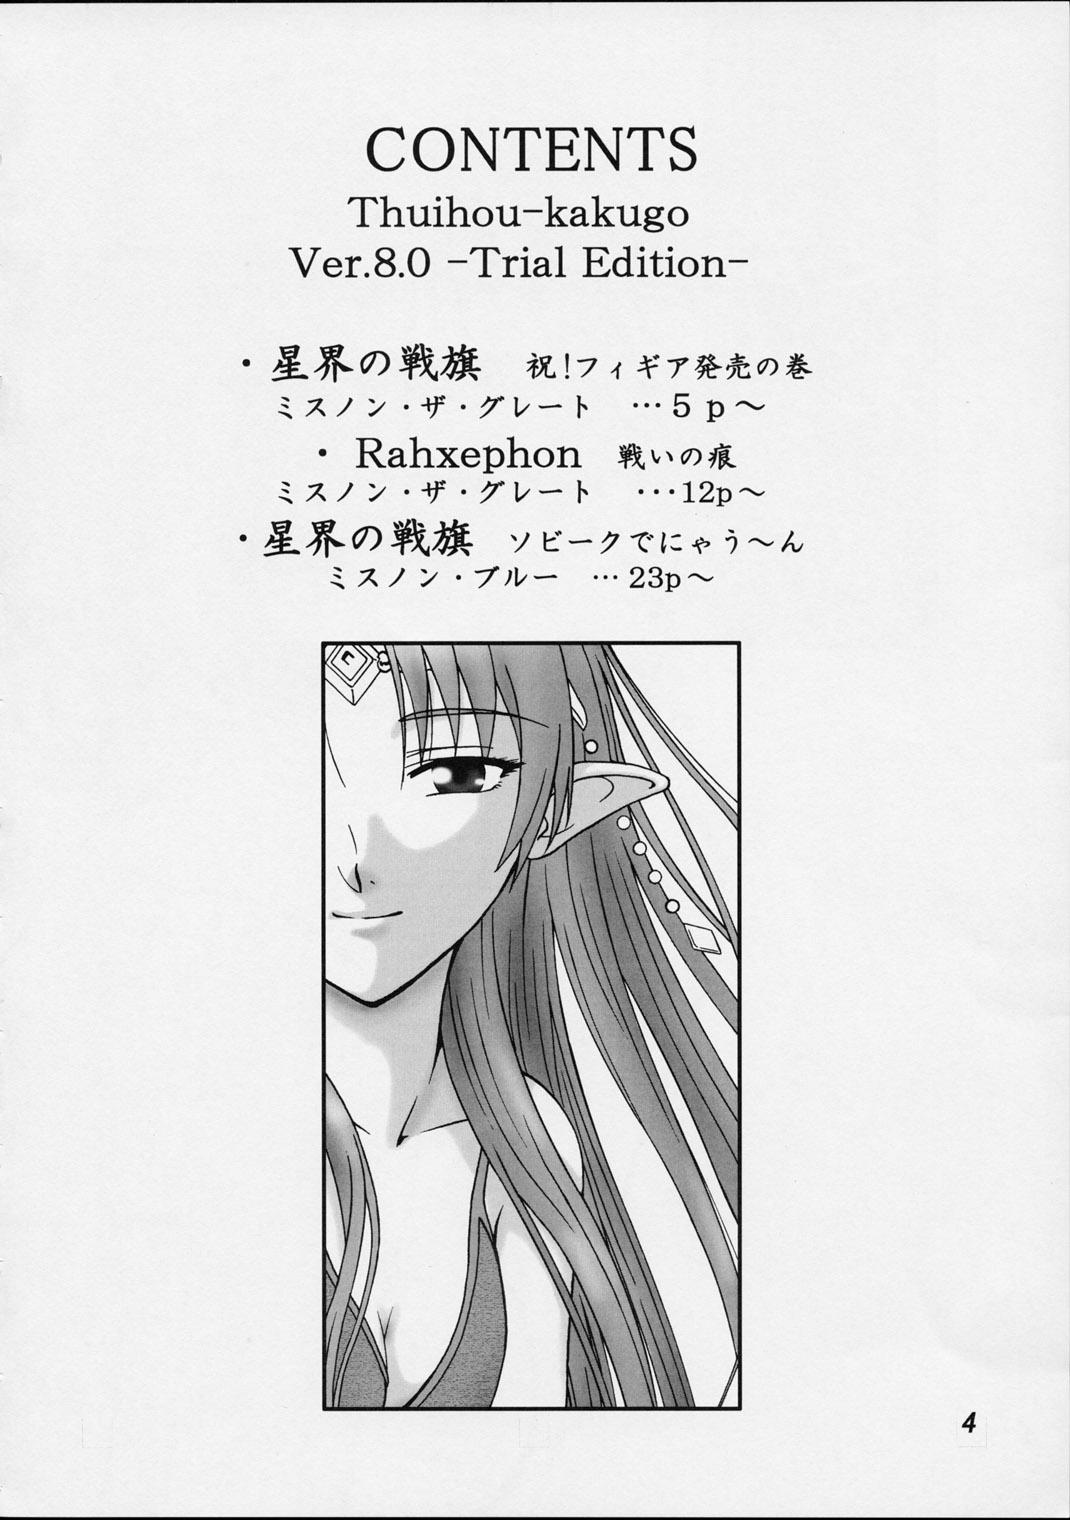 Gay Pissing (C62) [Oretachi Misnon Ikka (Misnon the Great, Misnon Blue)] Thuihou-kakugo Ver.8.0 -Trial Edition- (Seikai no Senki, RahXephon) - Banner of the stars Rahxephon Gilf - Page 3